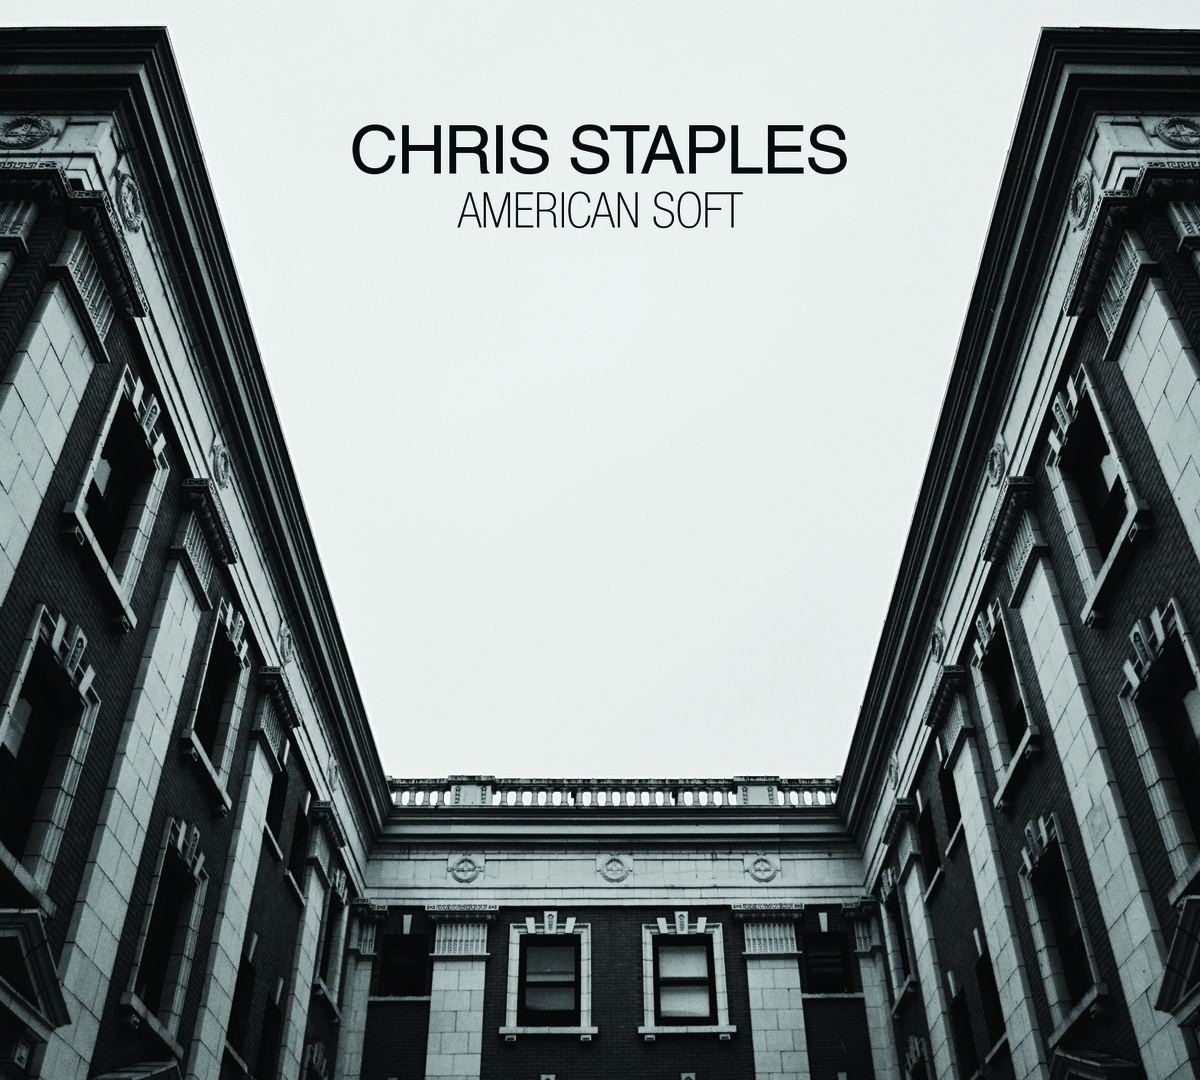 Chris Staples, American Soft  Out now, Barsuk Records, chrisstaplesmusic.com   Chris Staples comes